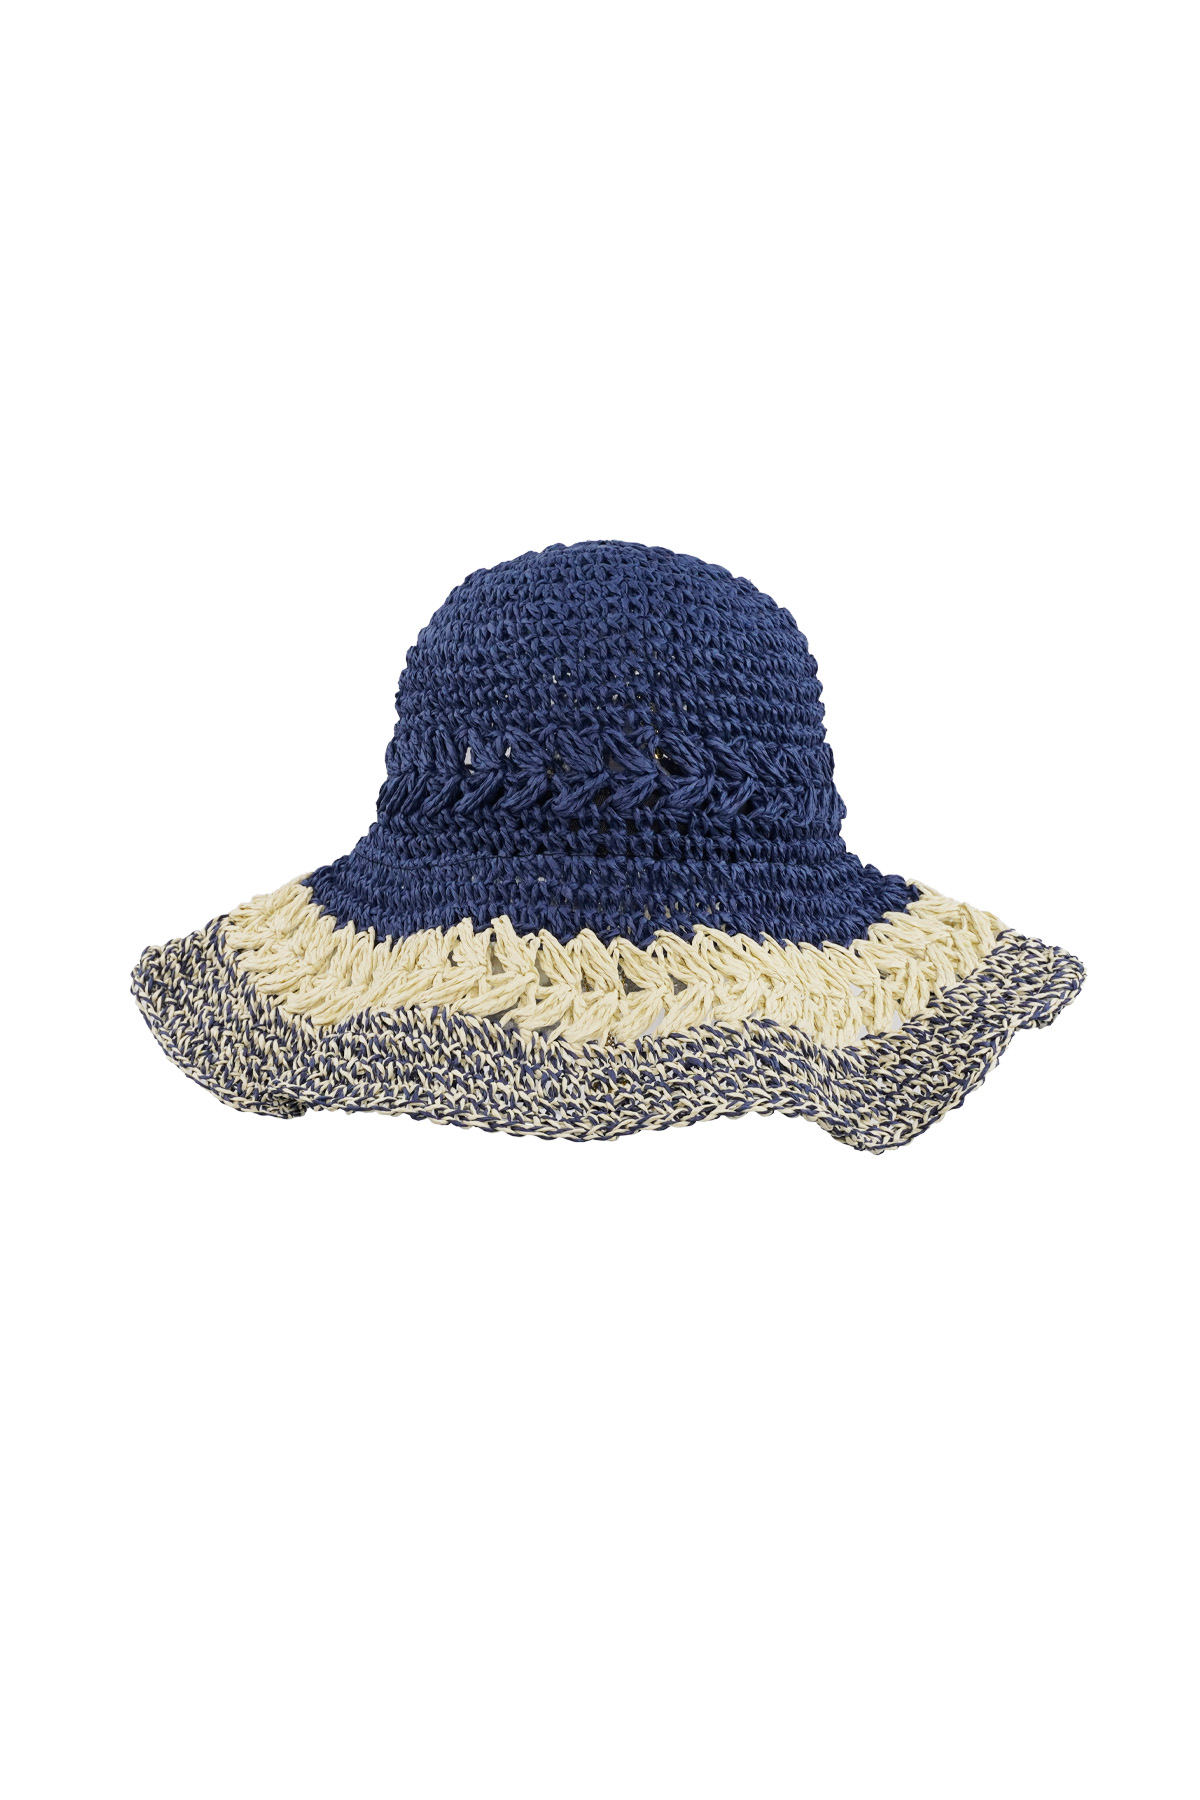 Gevlochten hoed met lagen - marineblauw h5 